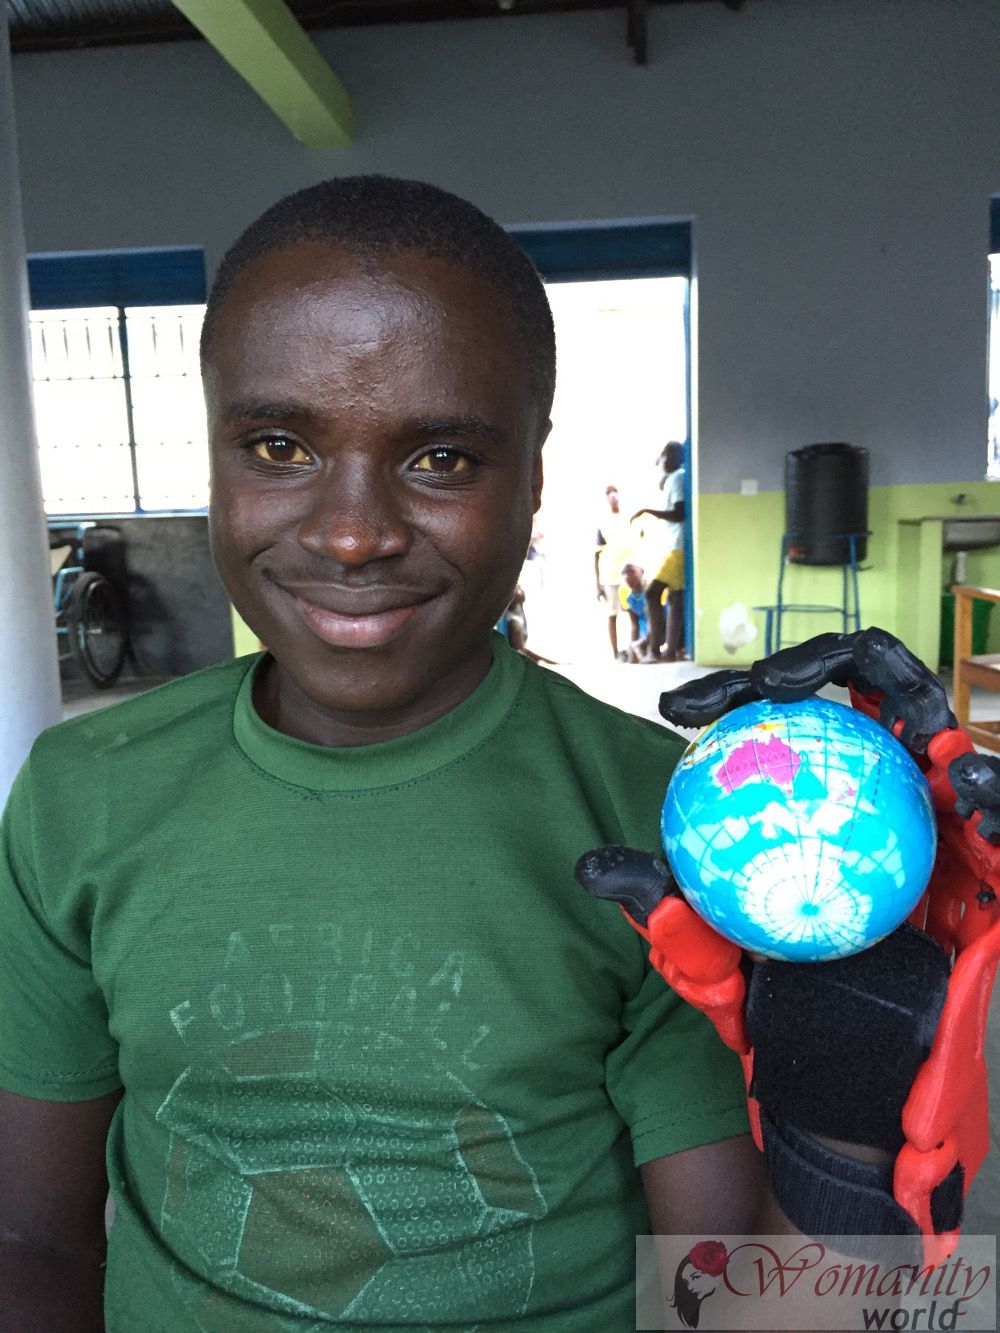 Un giovane ugandese riesce ad avere una mano attraverso un 3D protesi stampata.